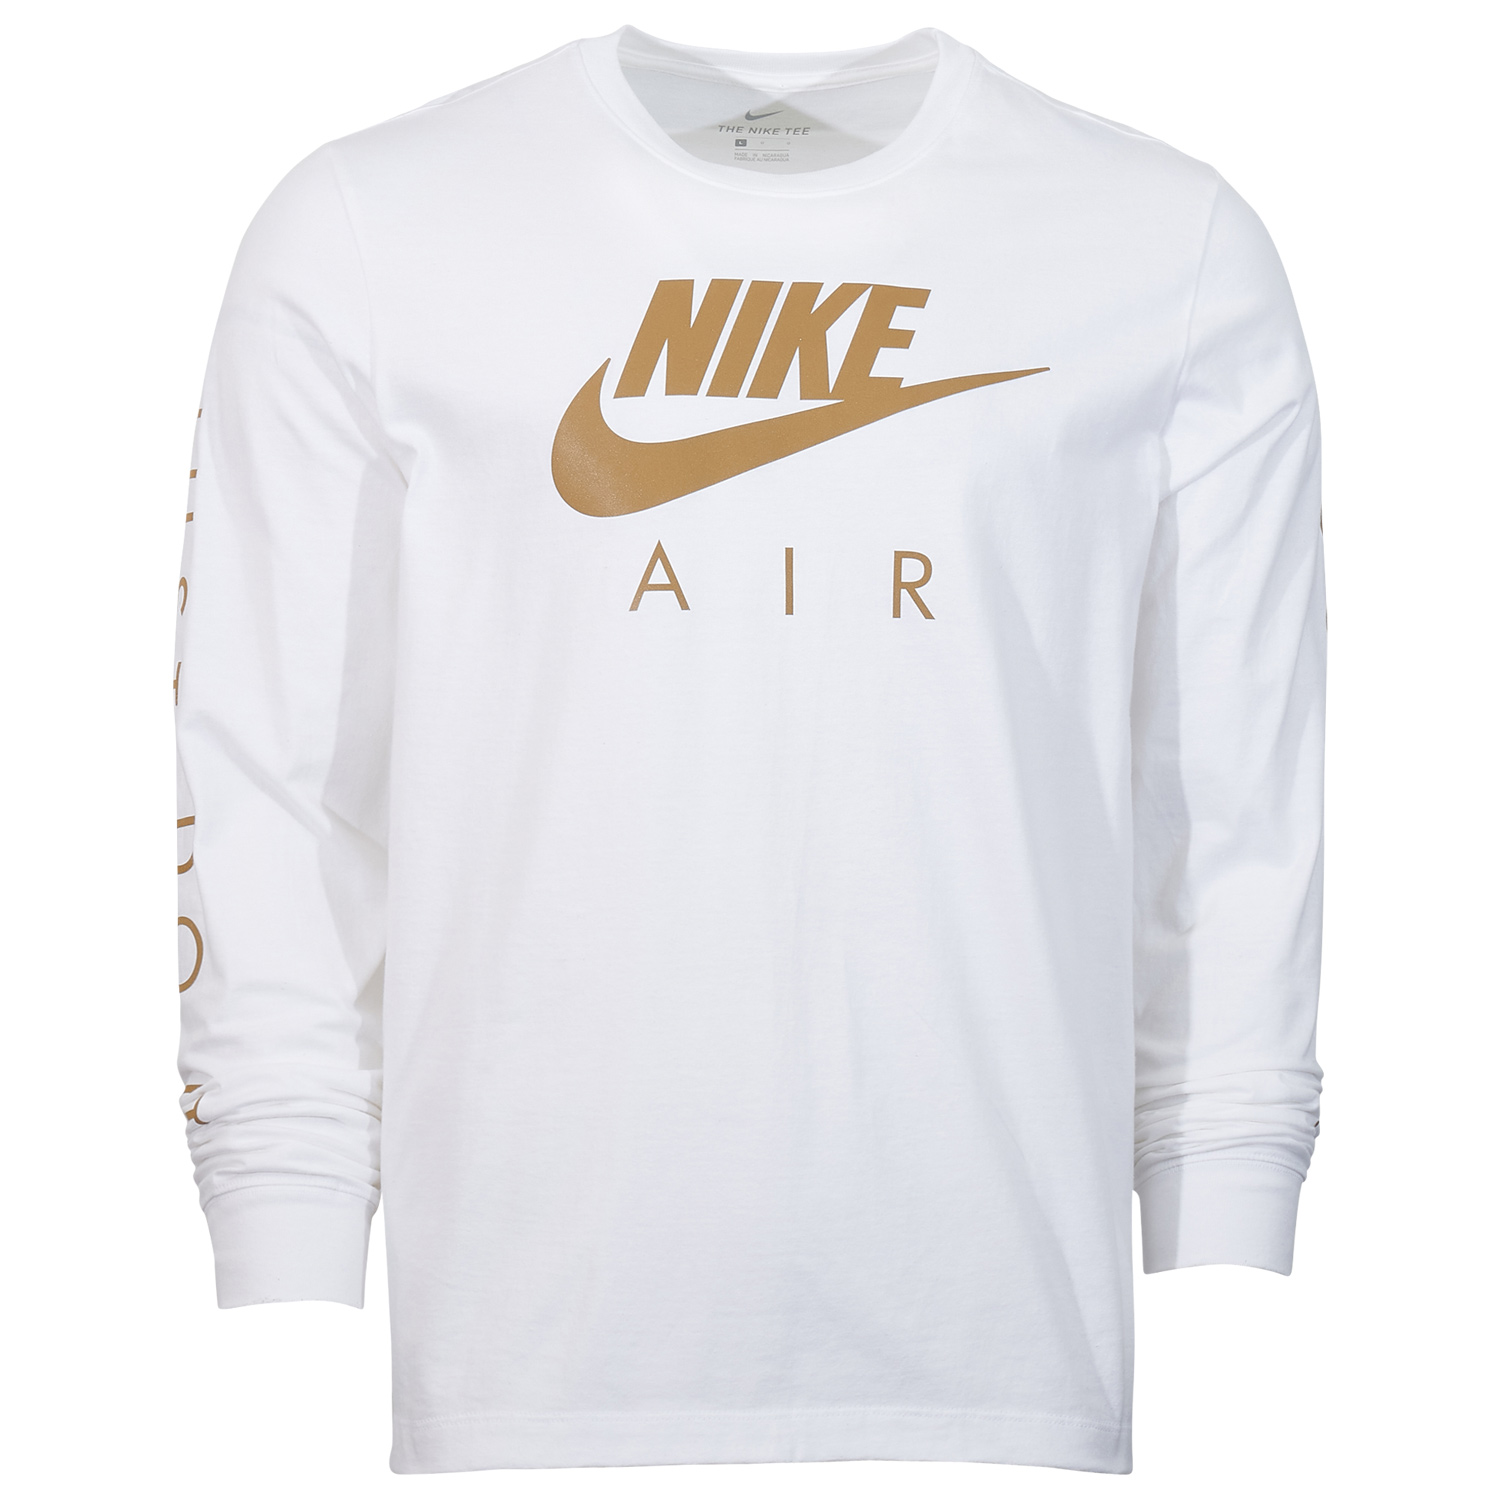 nike-air-long-sleeve-shirt-white-metallic-gold-1